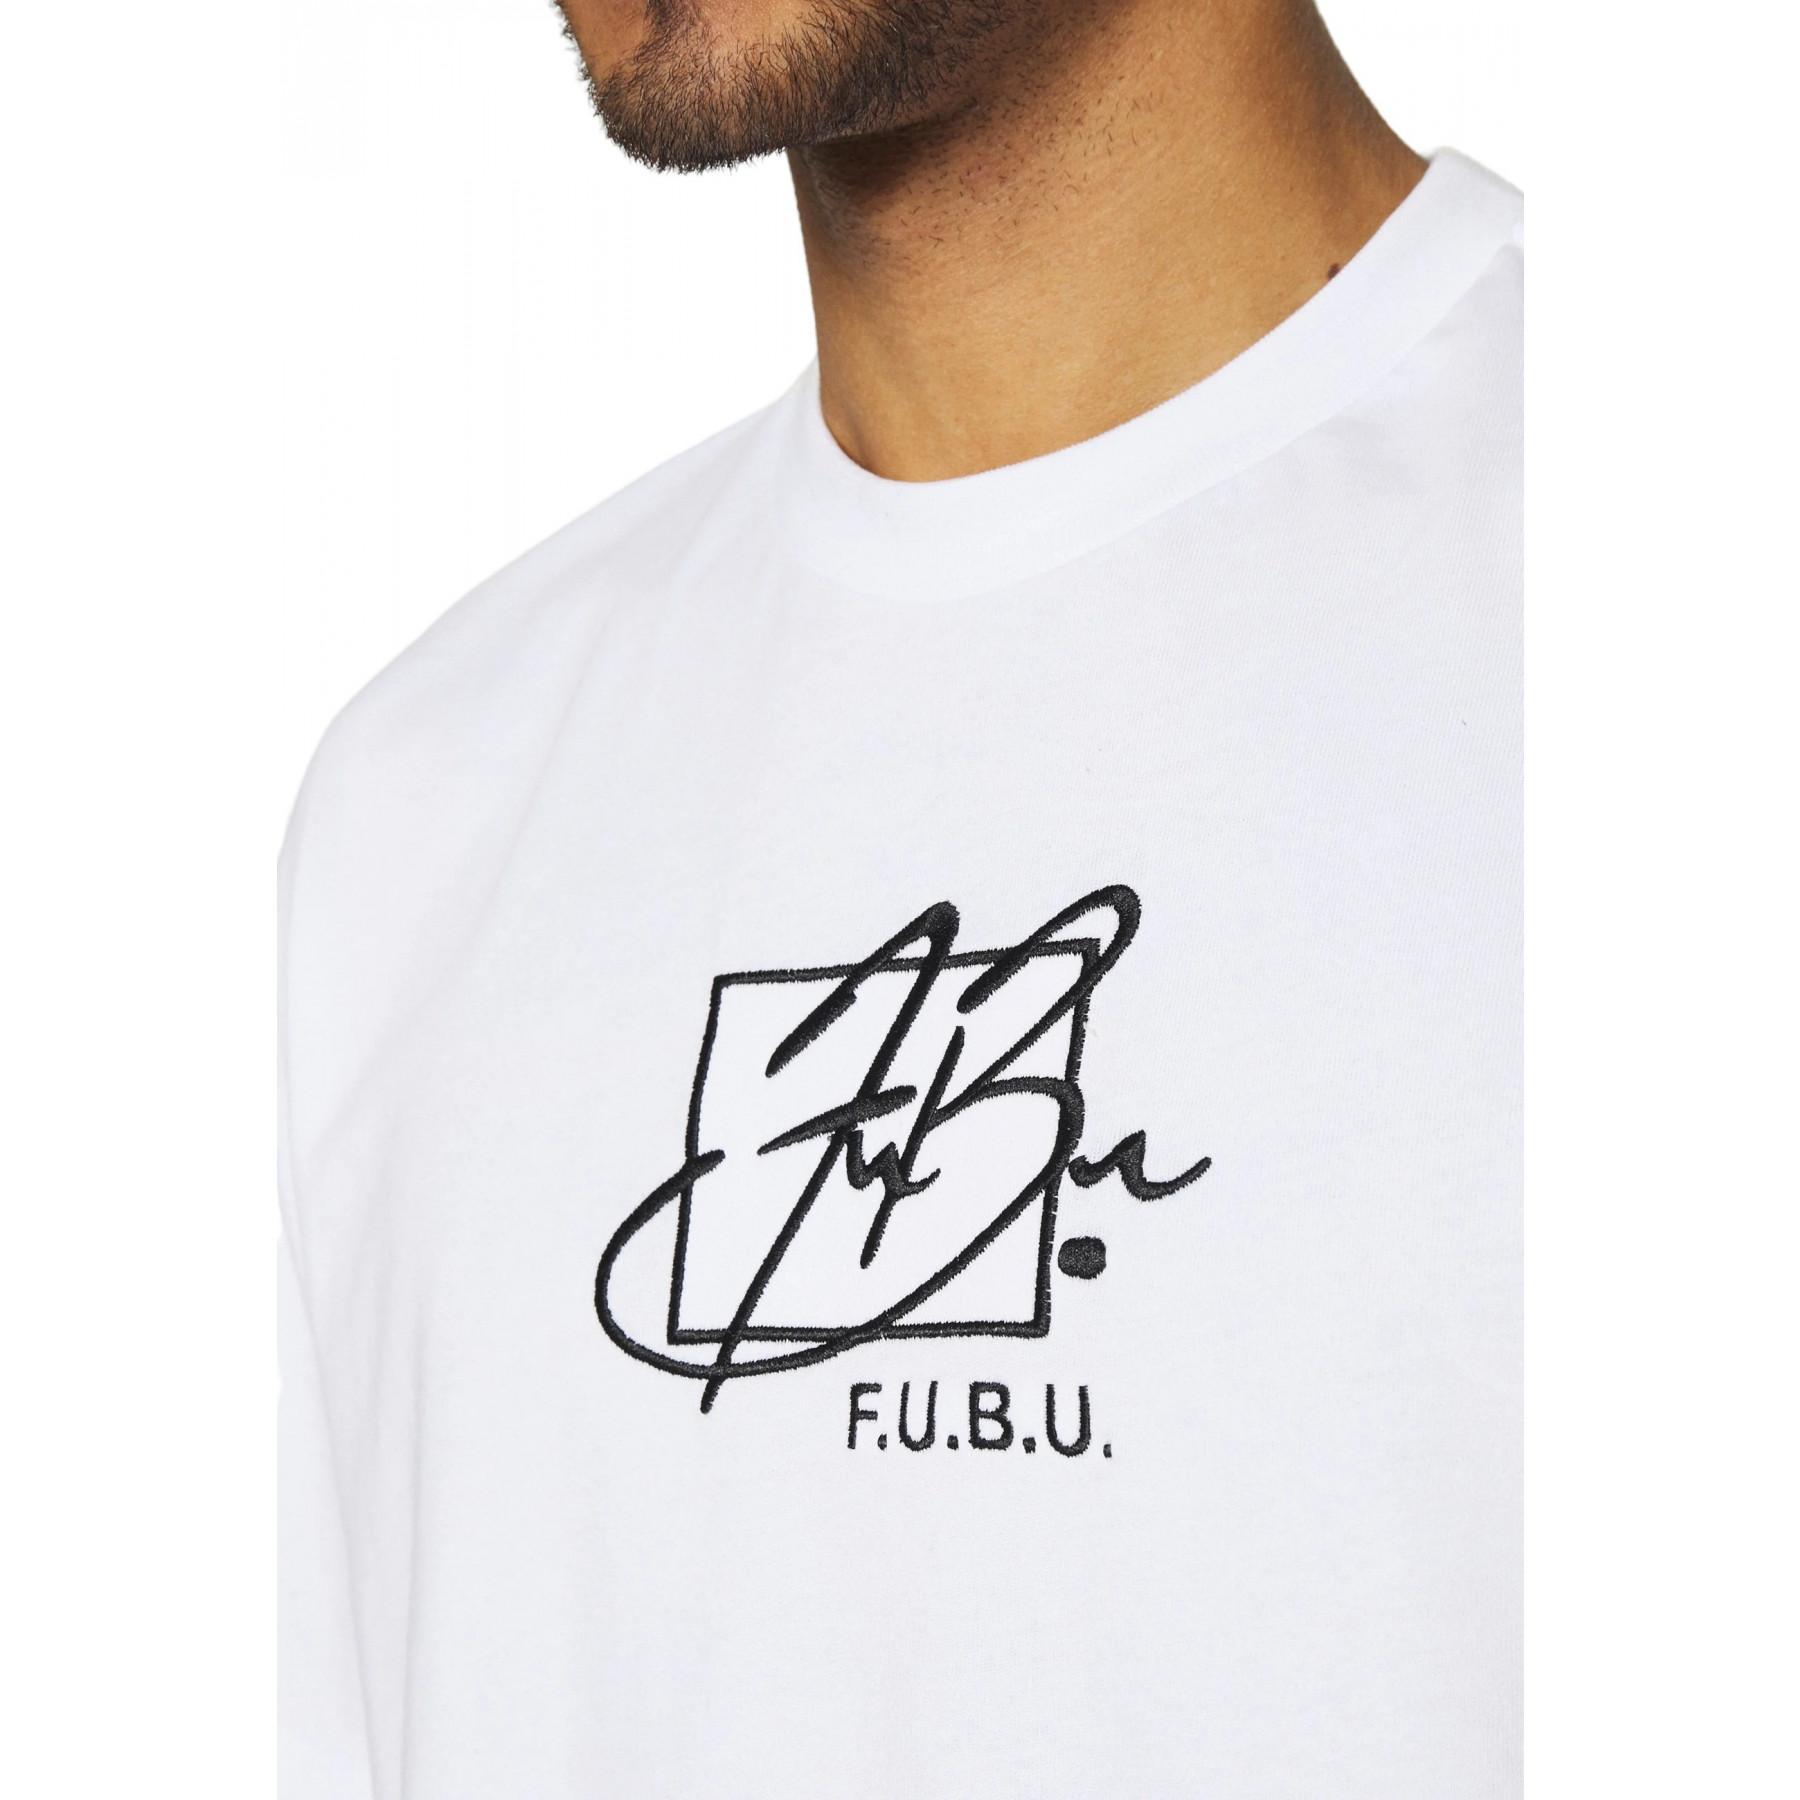 Camiseta Fubu Script